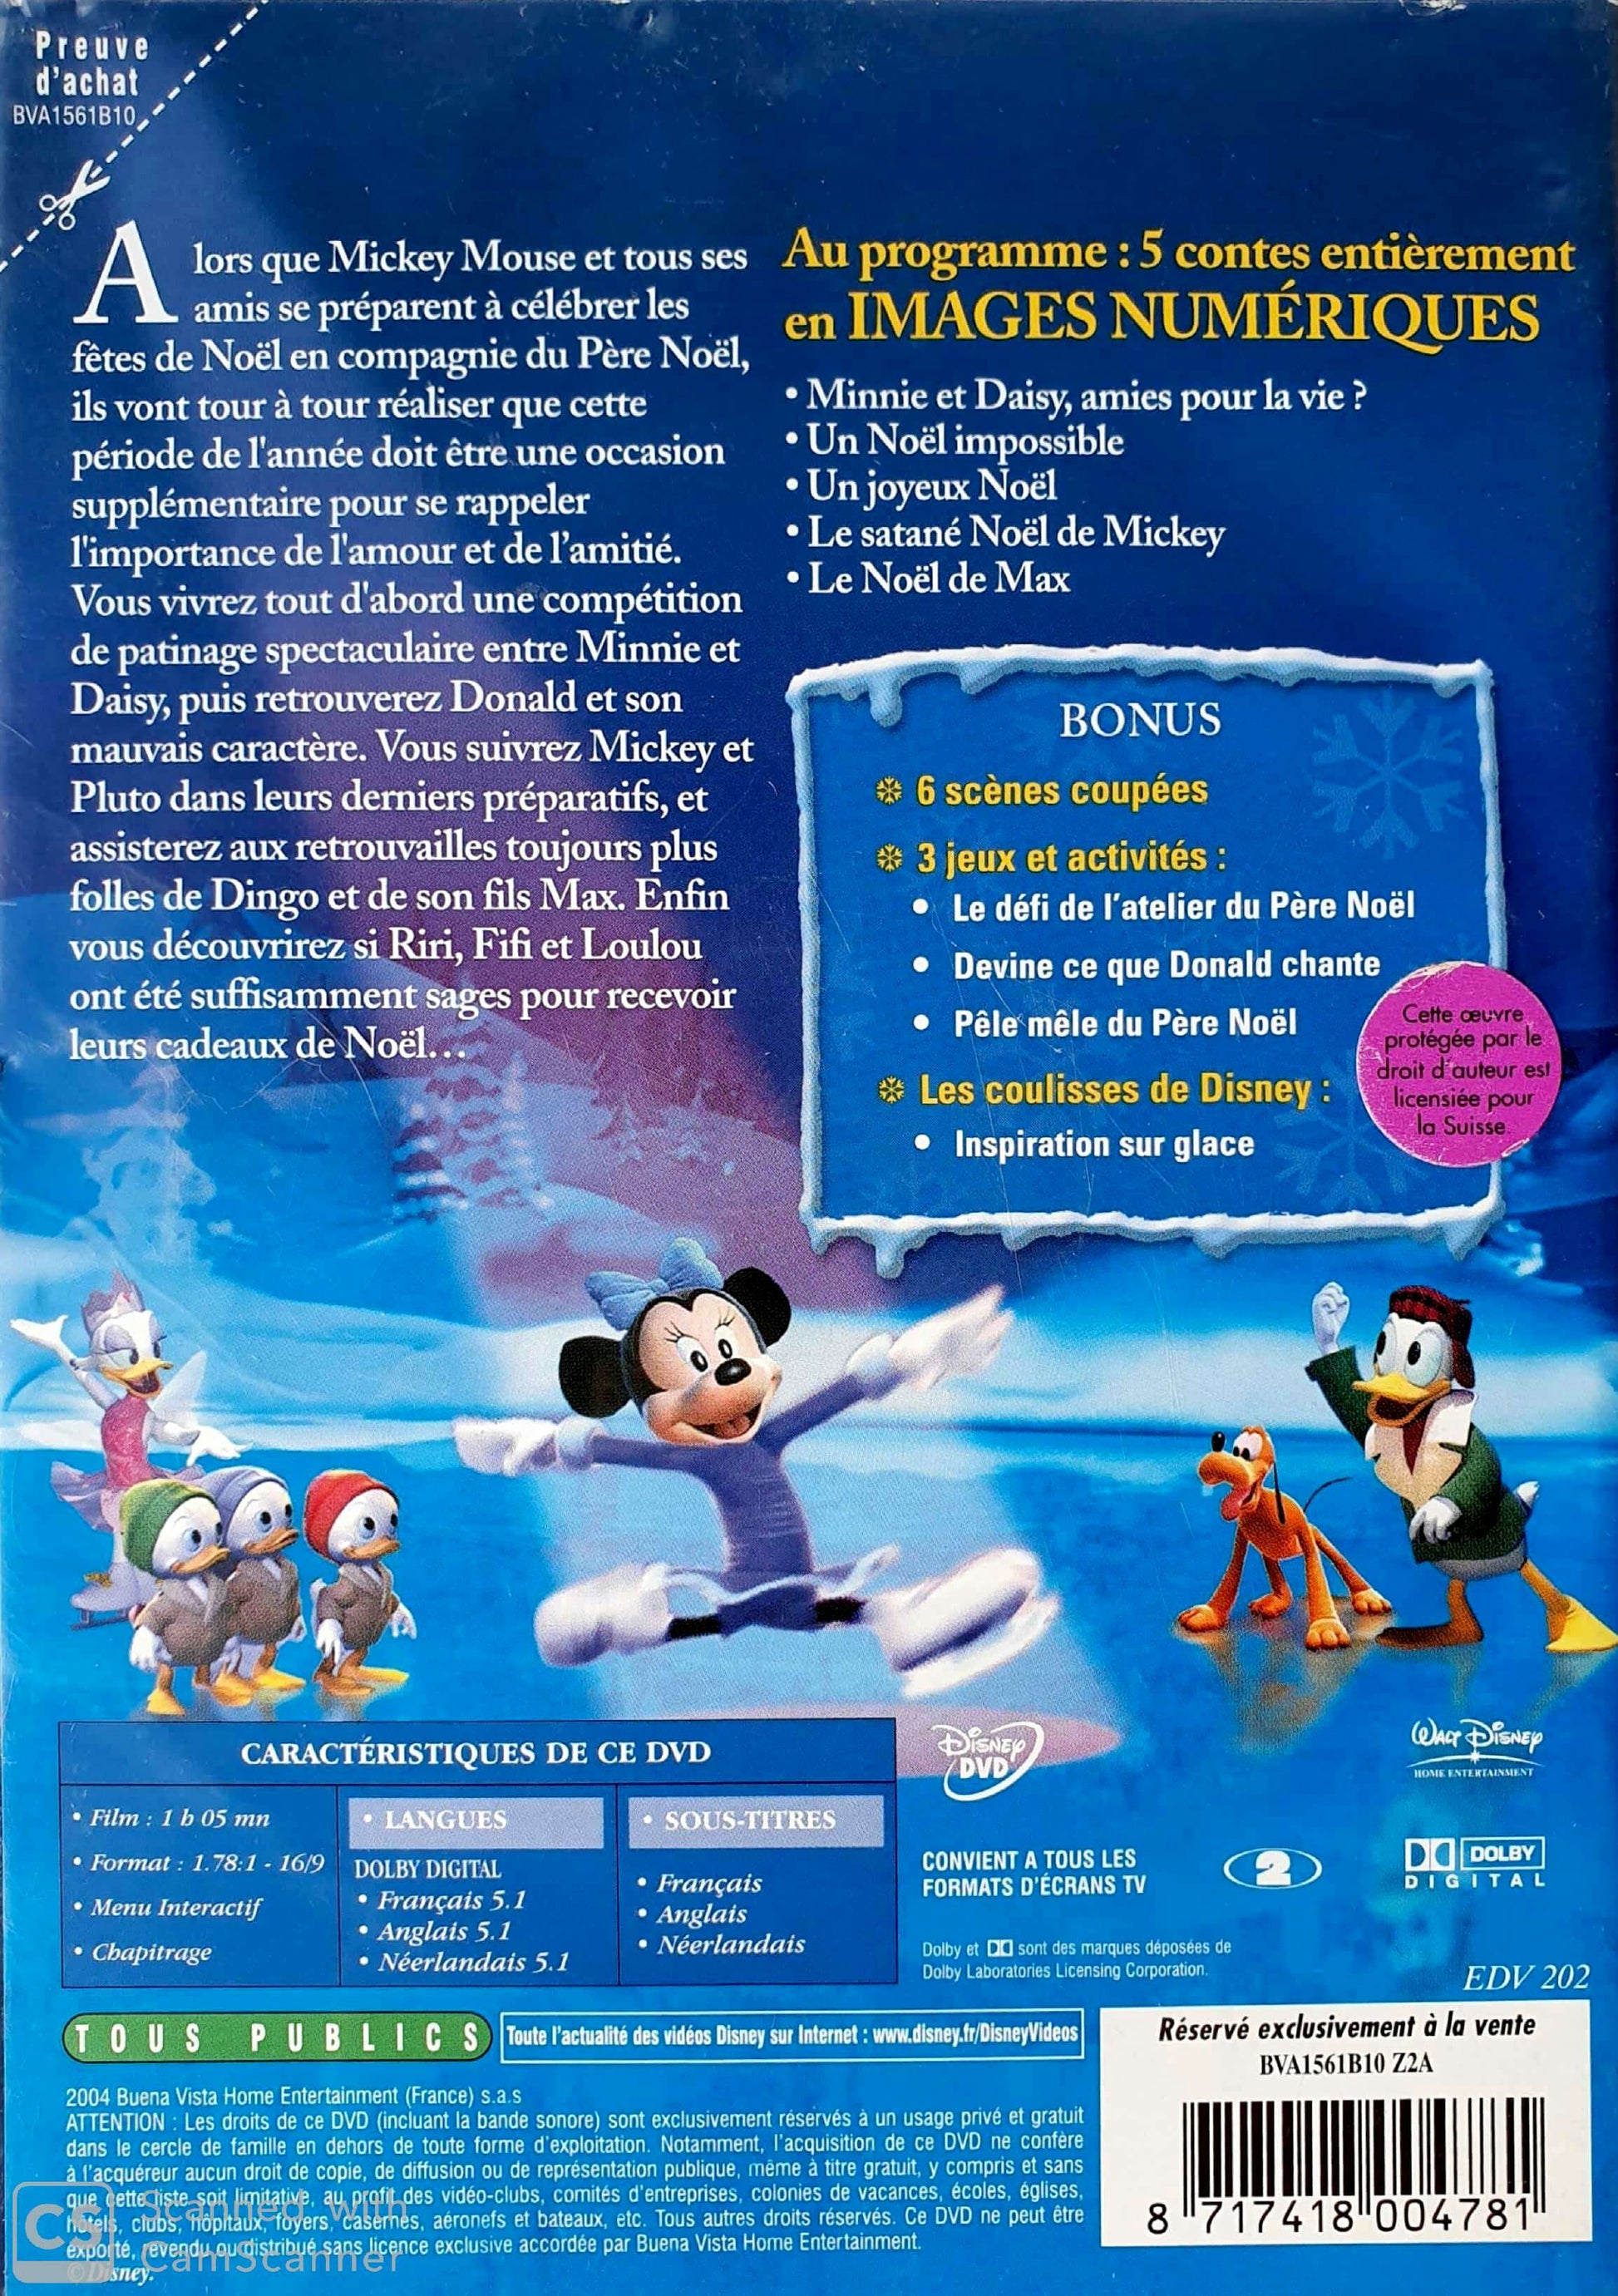 Mickey: Il Était deux fois noel EN, FR Disney  (4606741184567)